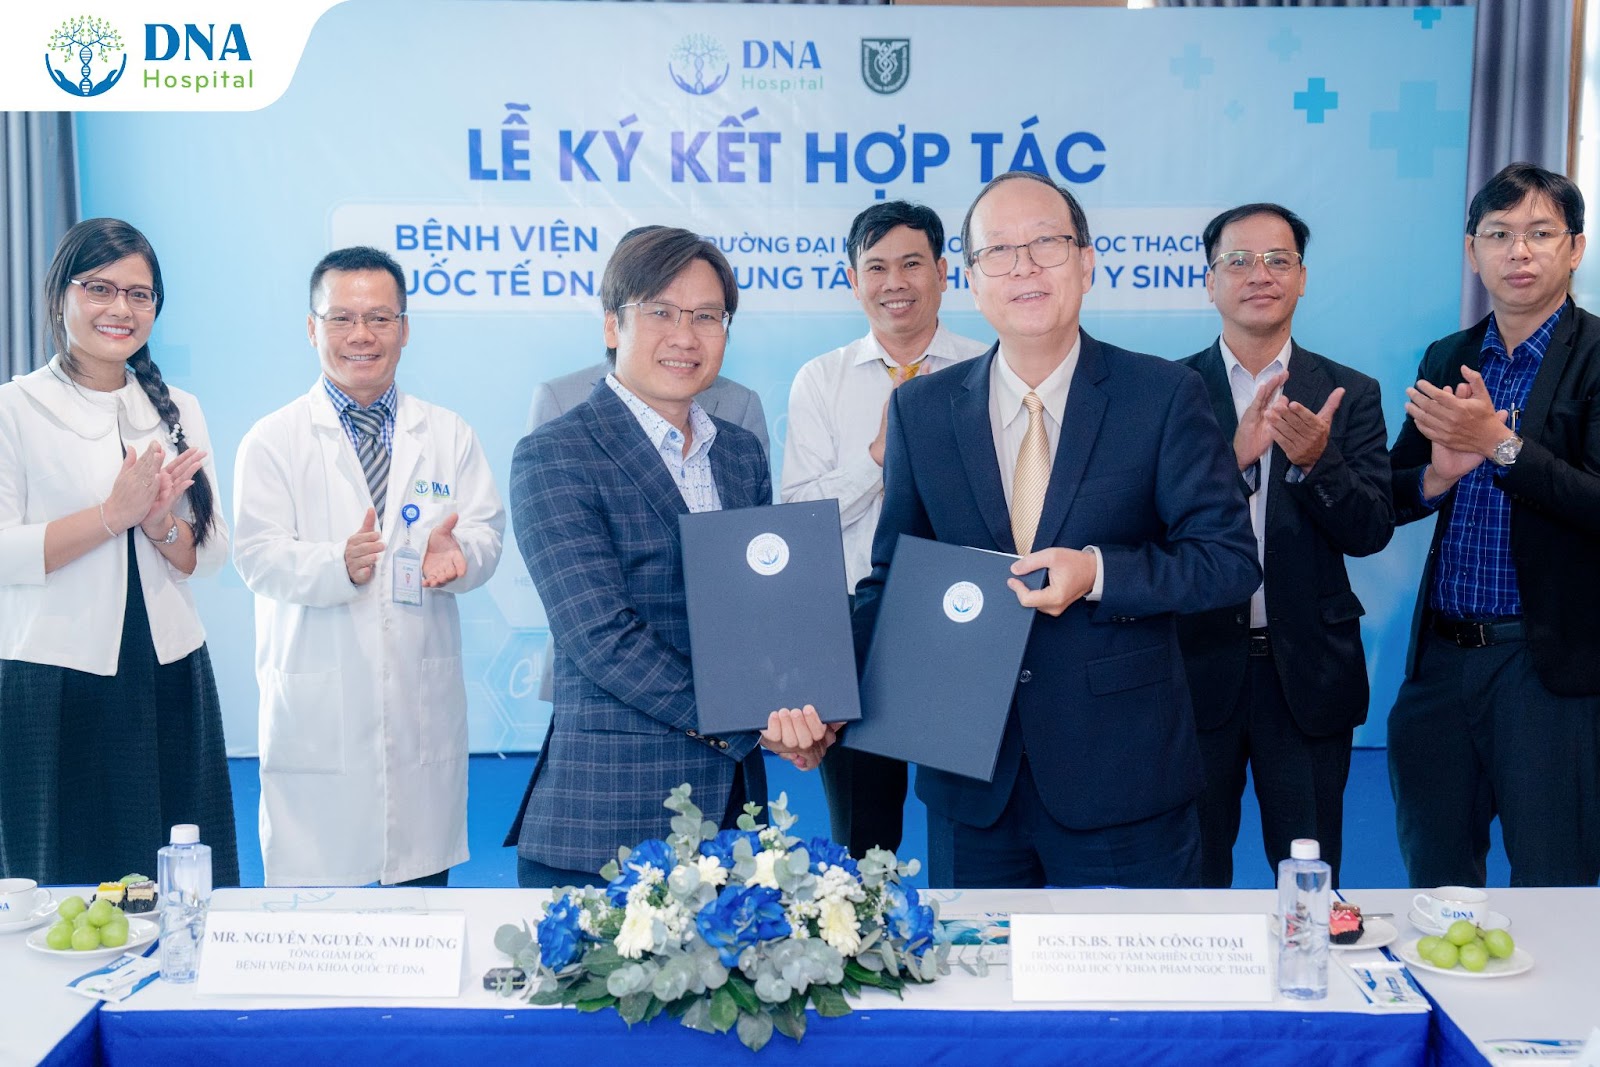 Bệnh Viện Quốc Tế DNA ký kết hợp tác với Đại học Y khoa Phạm Ngọc Thạch - 2